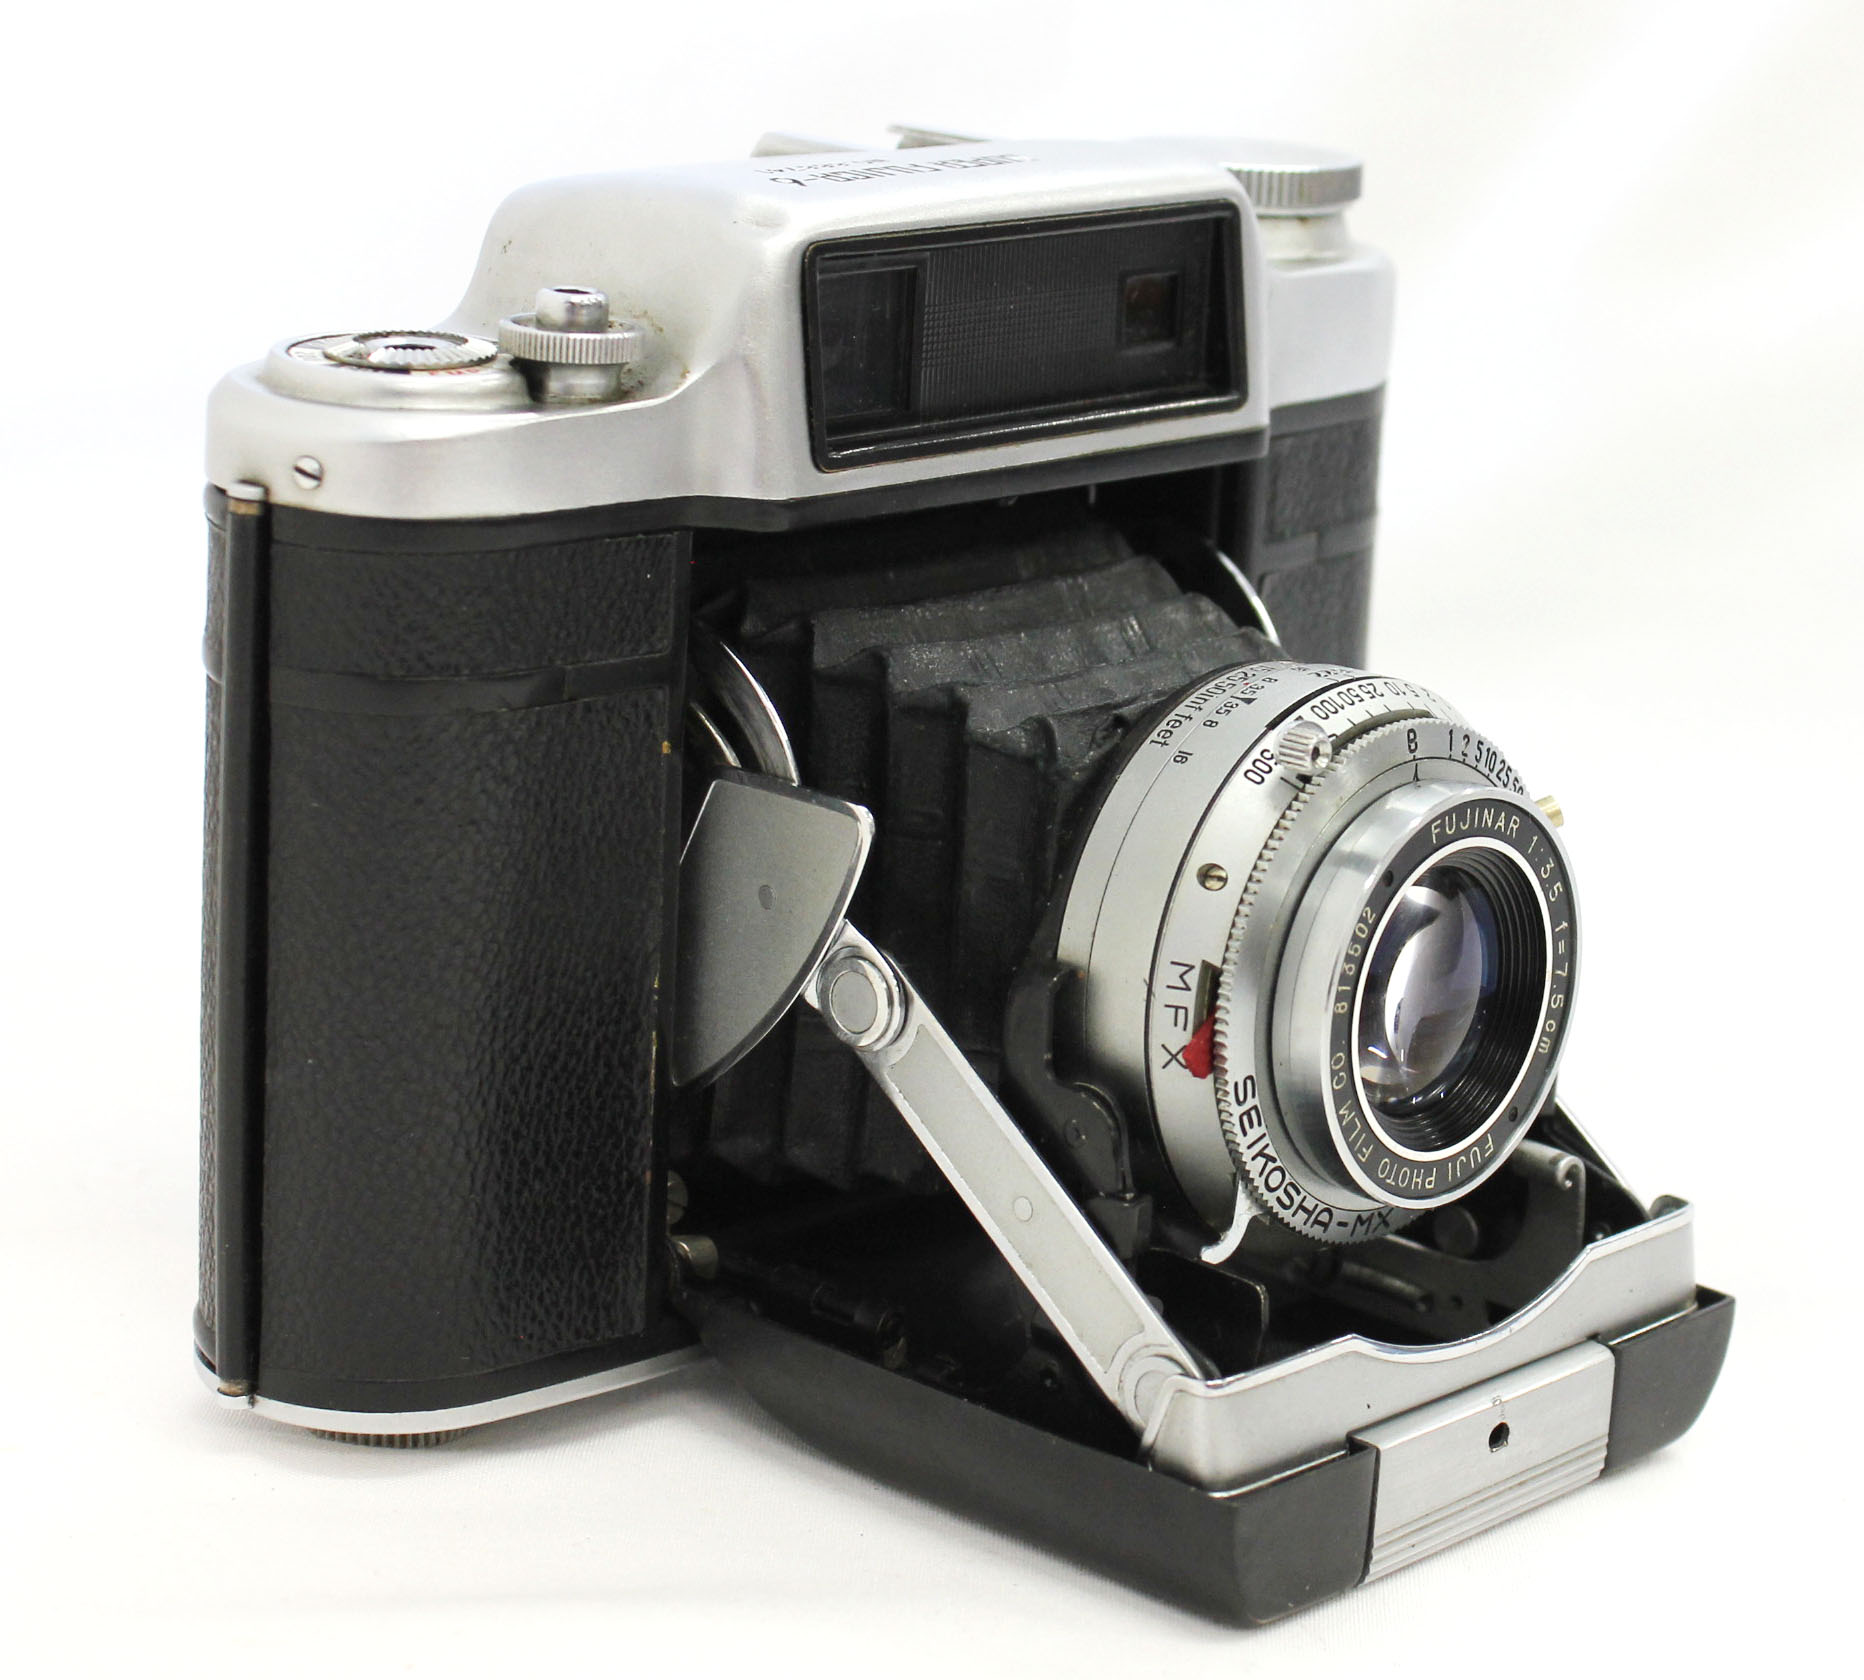 Fuji Super Fujica-6 Six 6x6 Medium Format Film Camera with Fujinar 75mm F/3.5 from Japan Photo 1